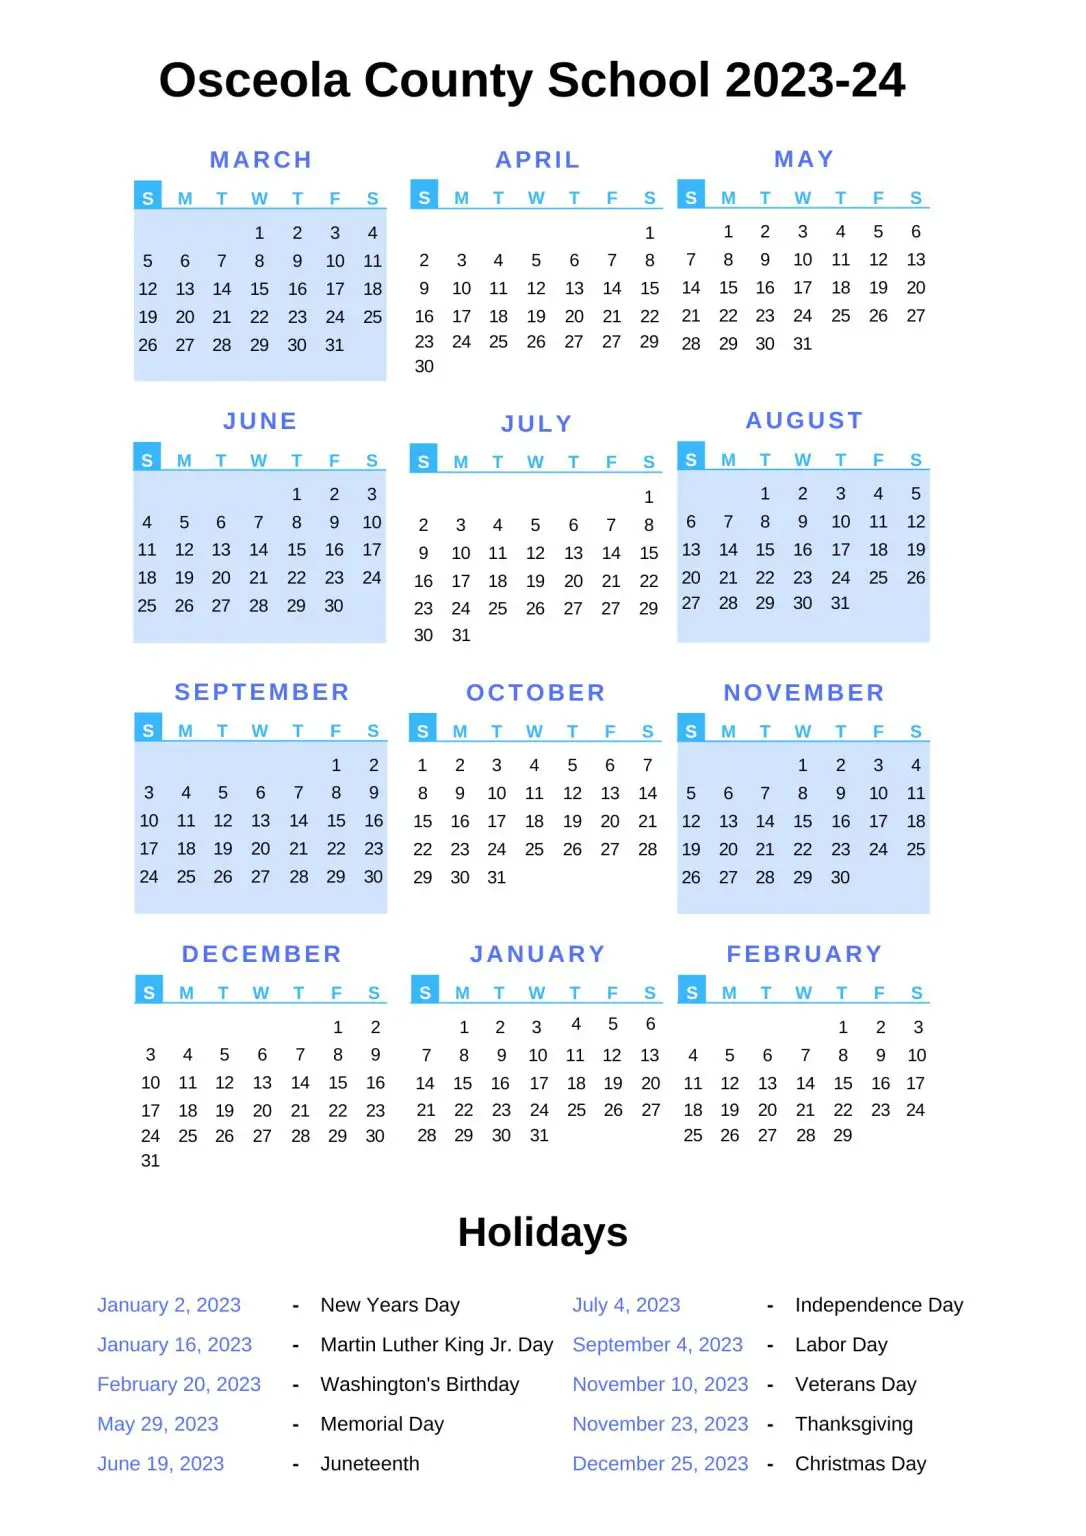 Osceola County School Calendar 202324 With Holidays